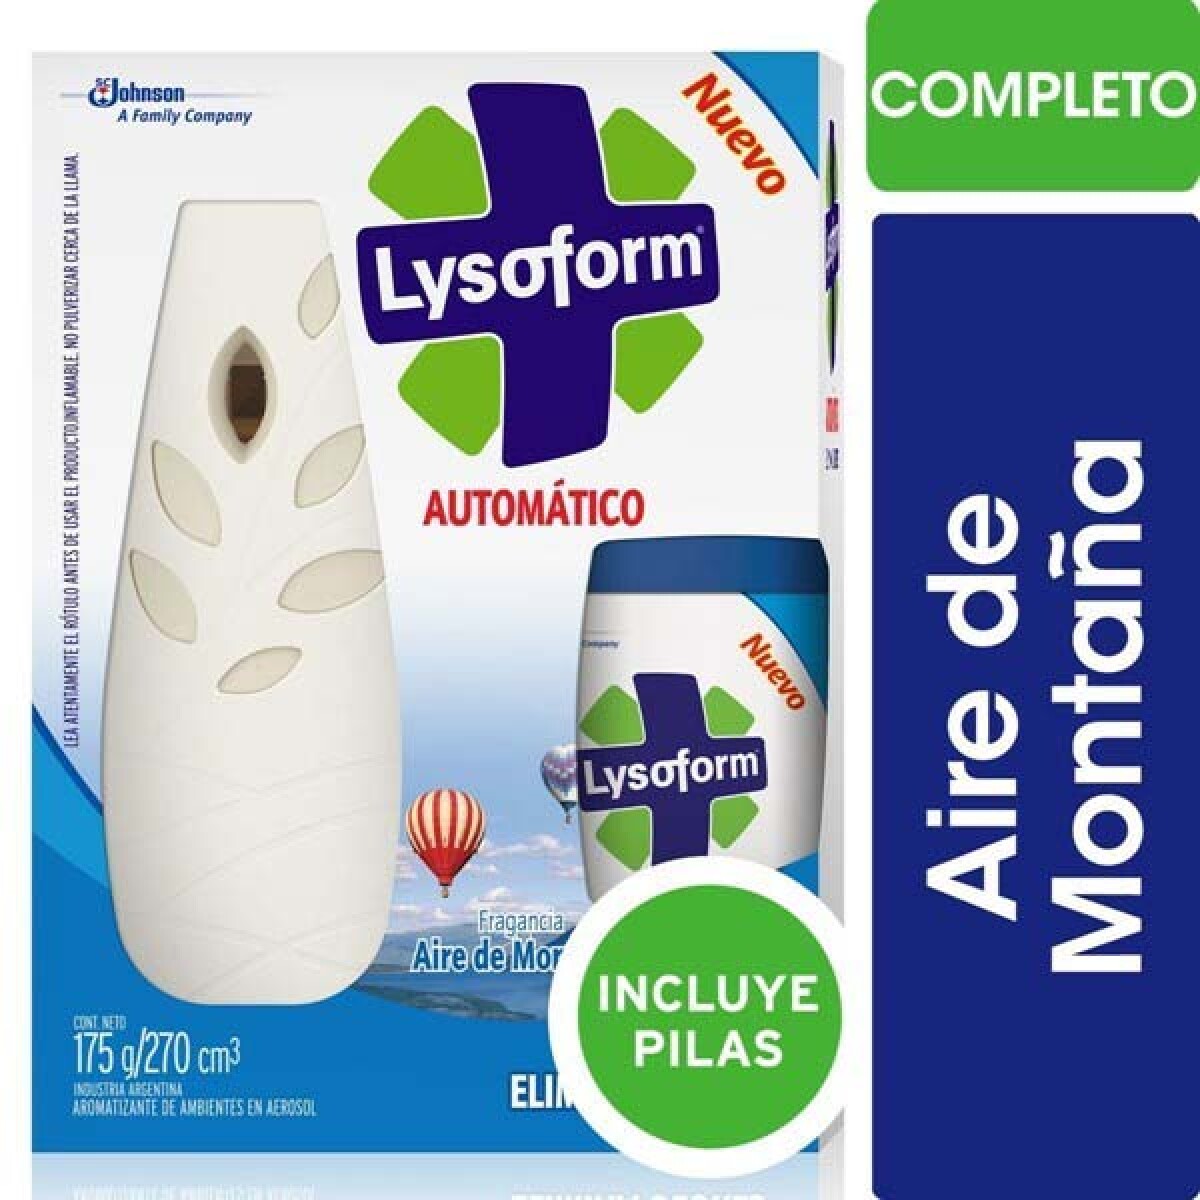 Lysoform Automatico Full Aparato+Repuest 